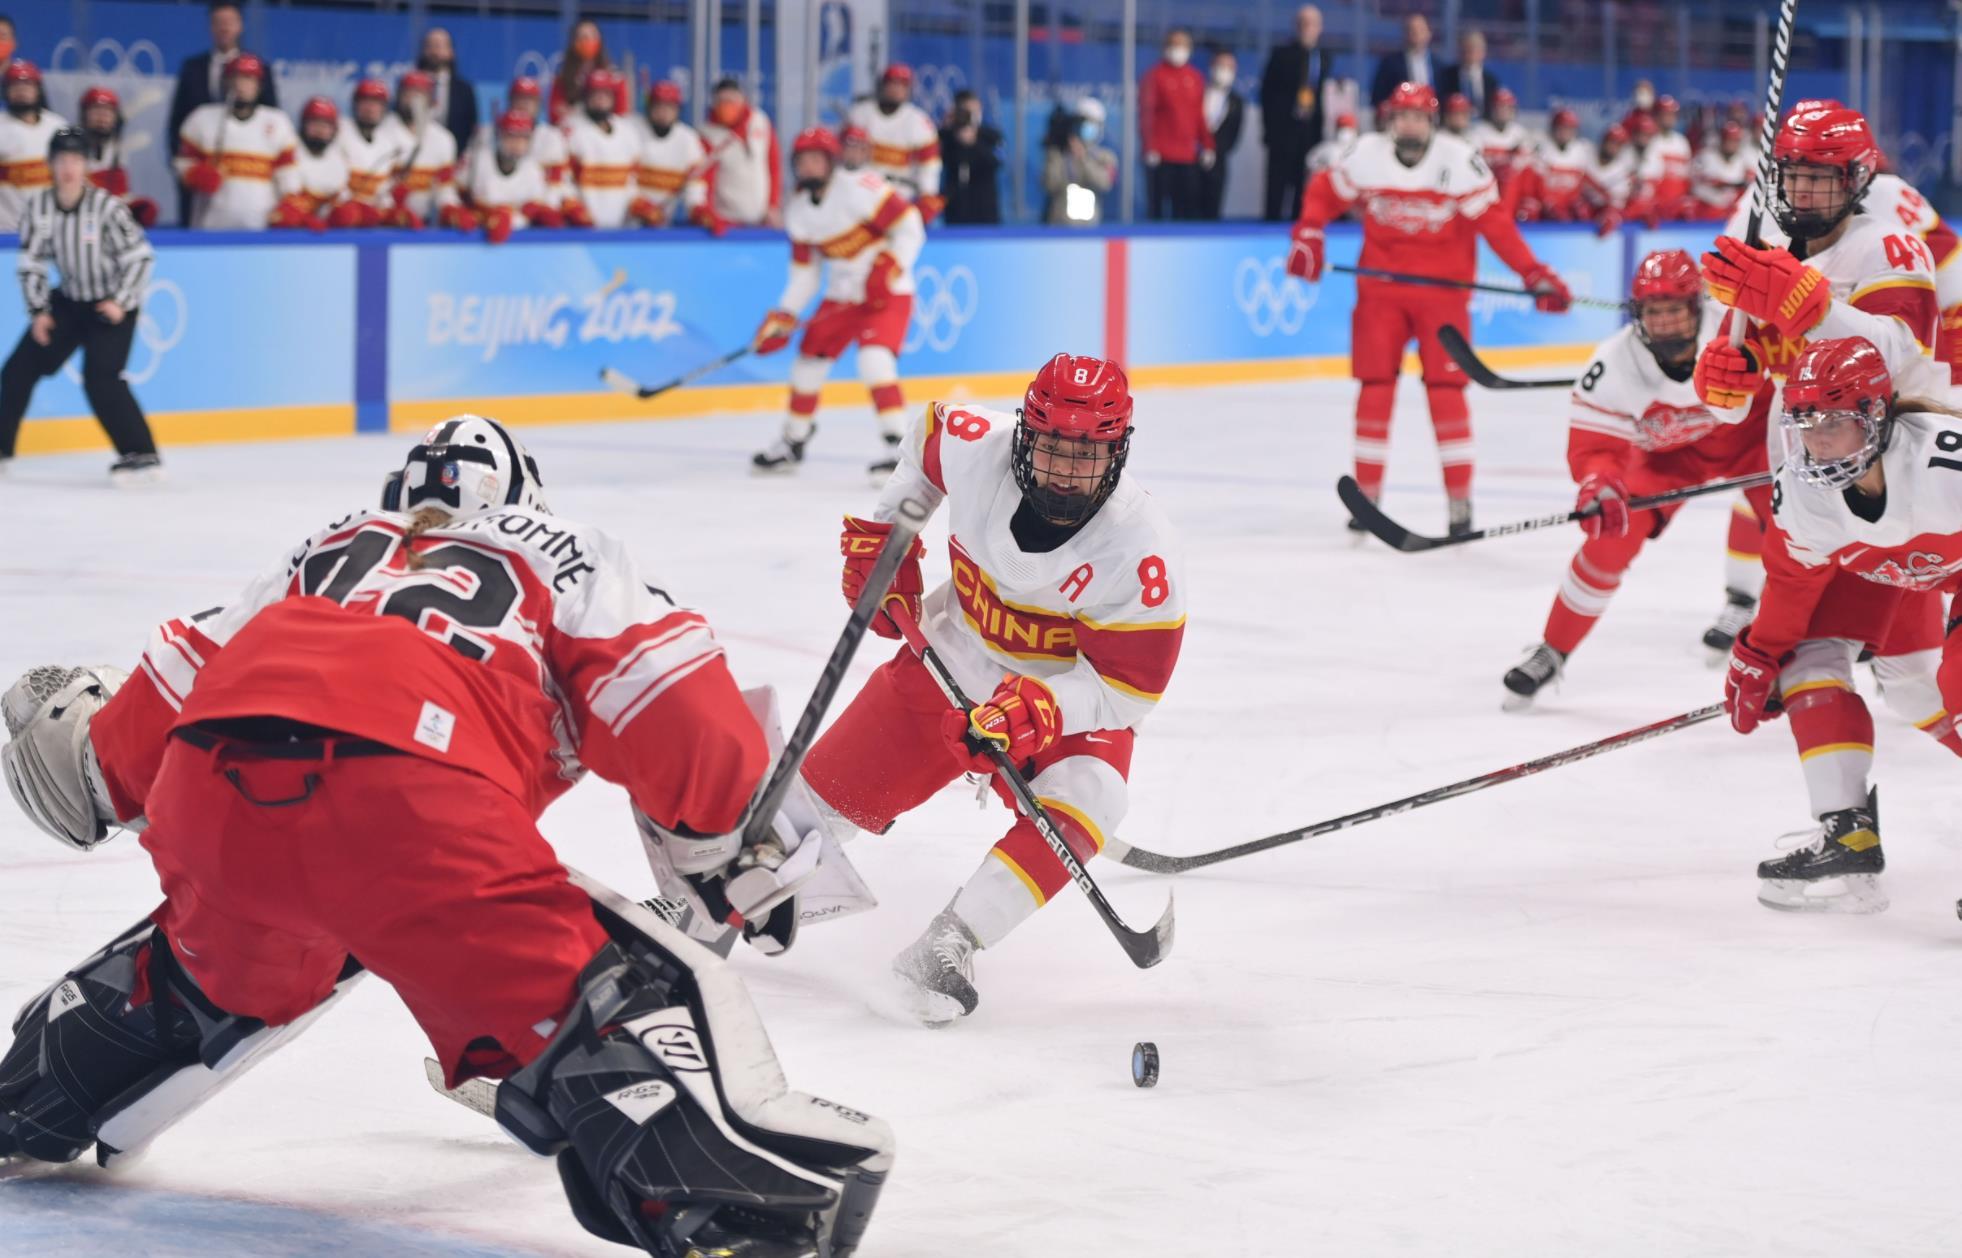 2021年全国男子冰球锦标赛揭幕 澳门队首次参赛 - 中国日报网